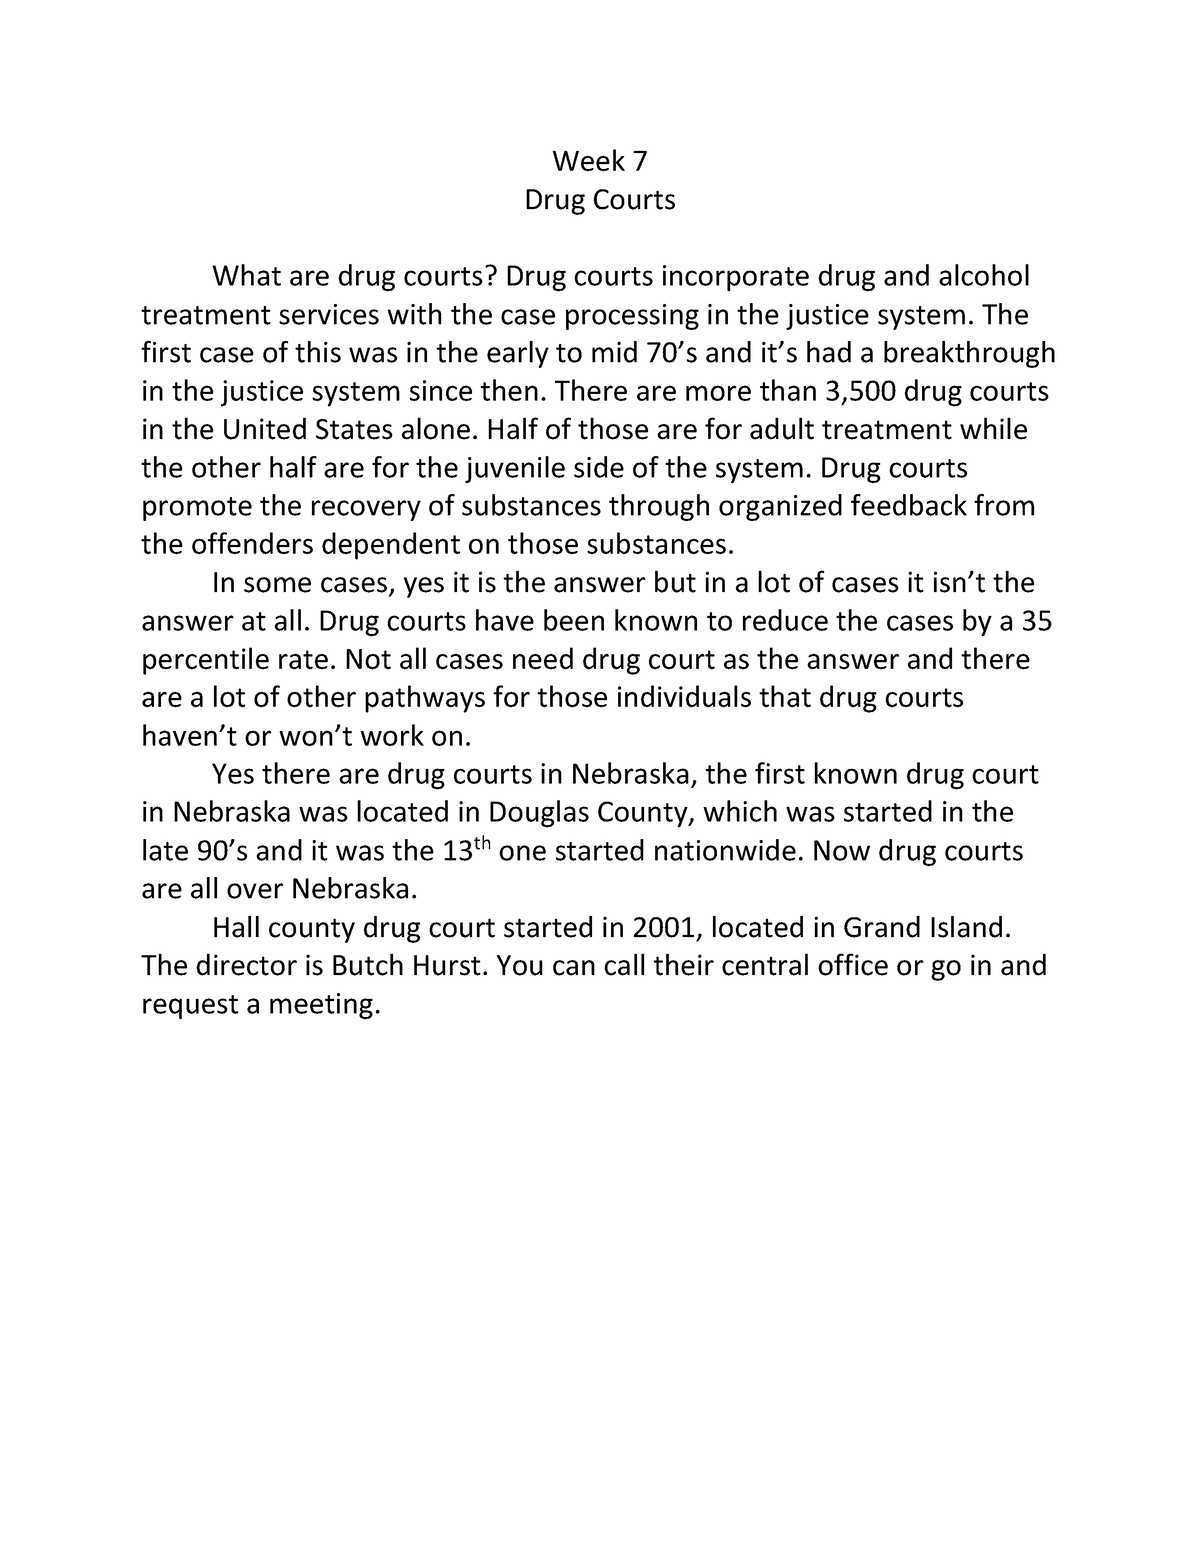 essay outline on drug courts